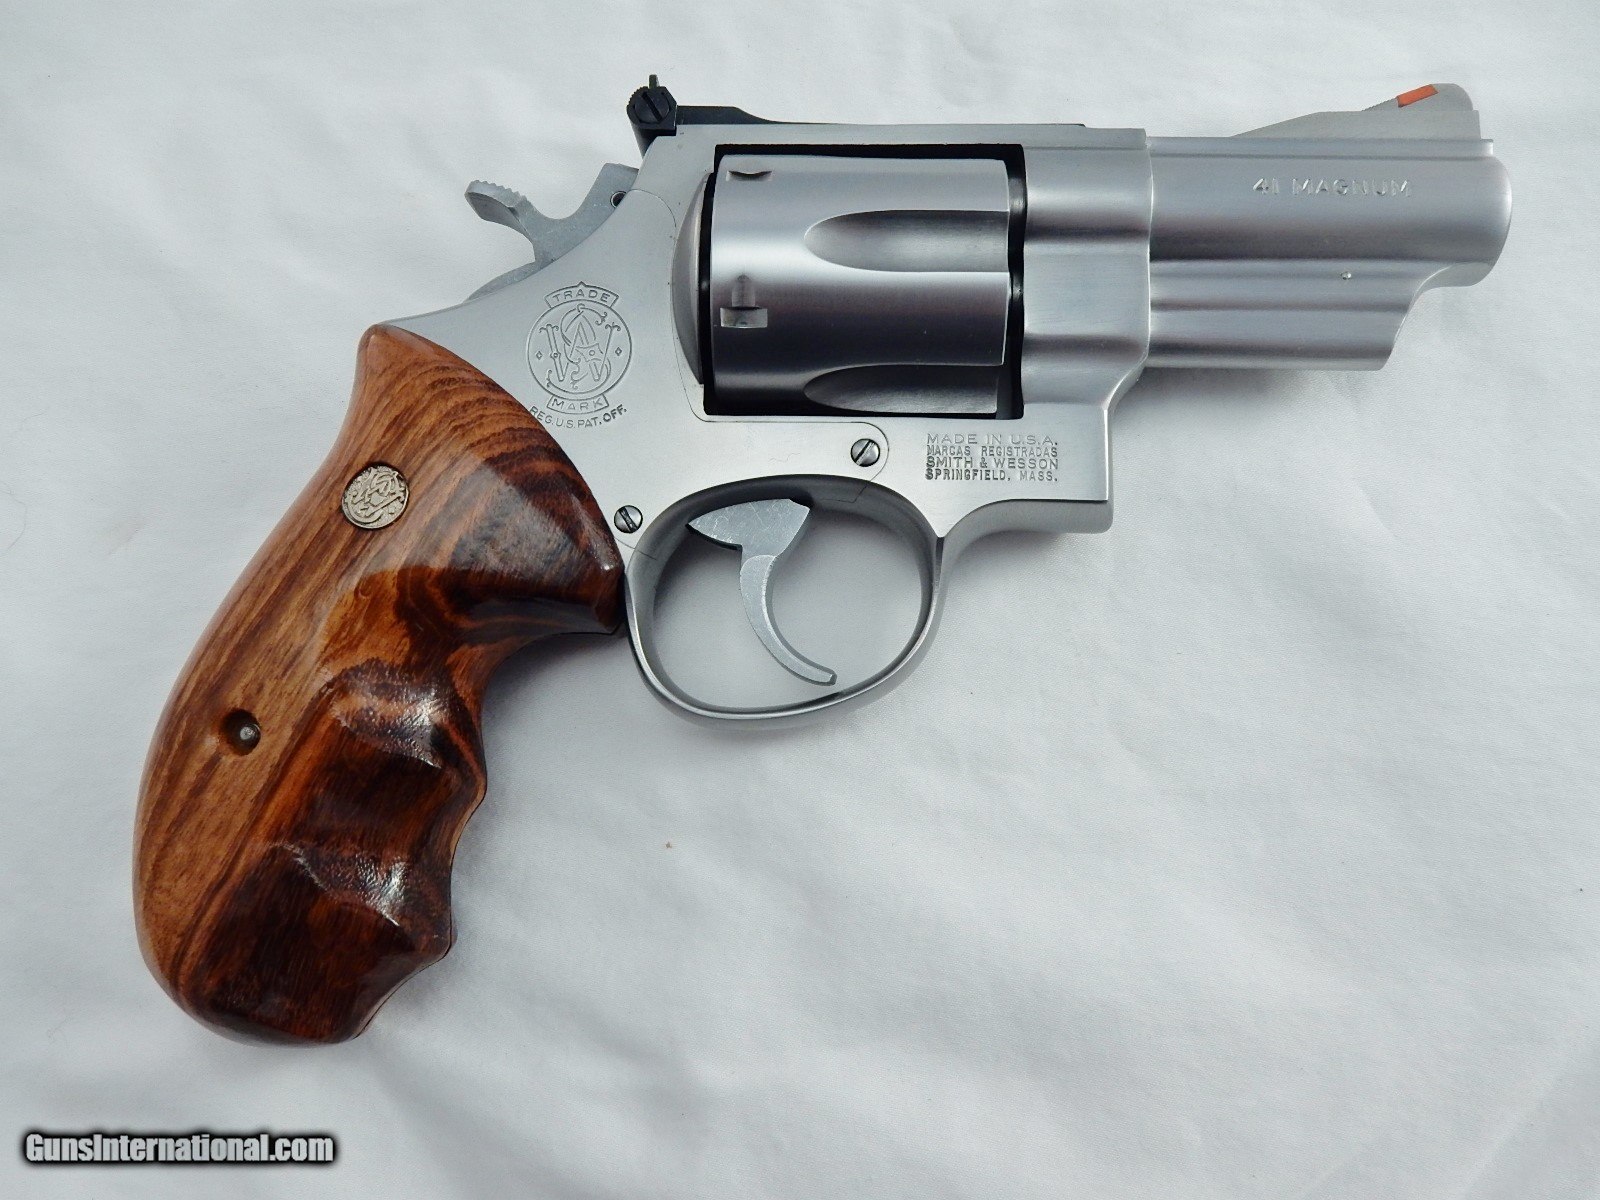 1986-Smith-Wesson-657-3-Inch-41-Magnum_101101079_454_DE5EA652E2EA1401.JPG